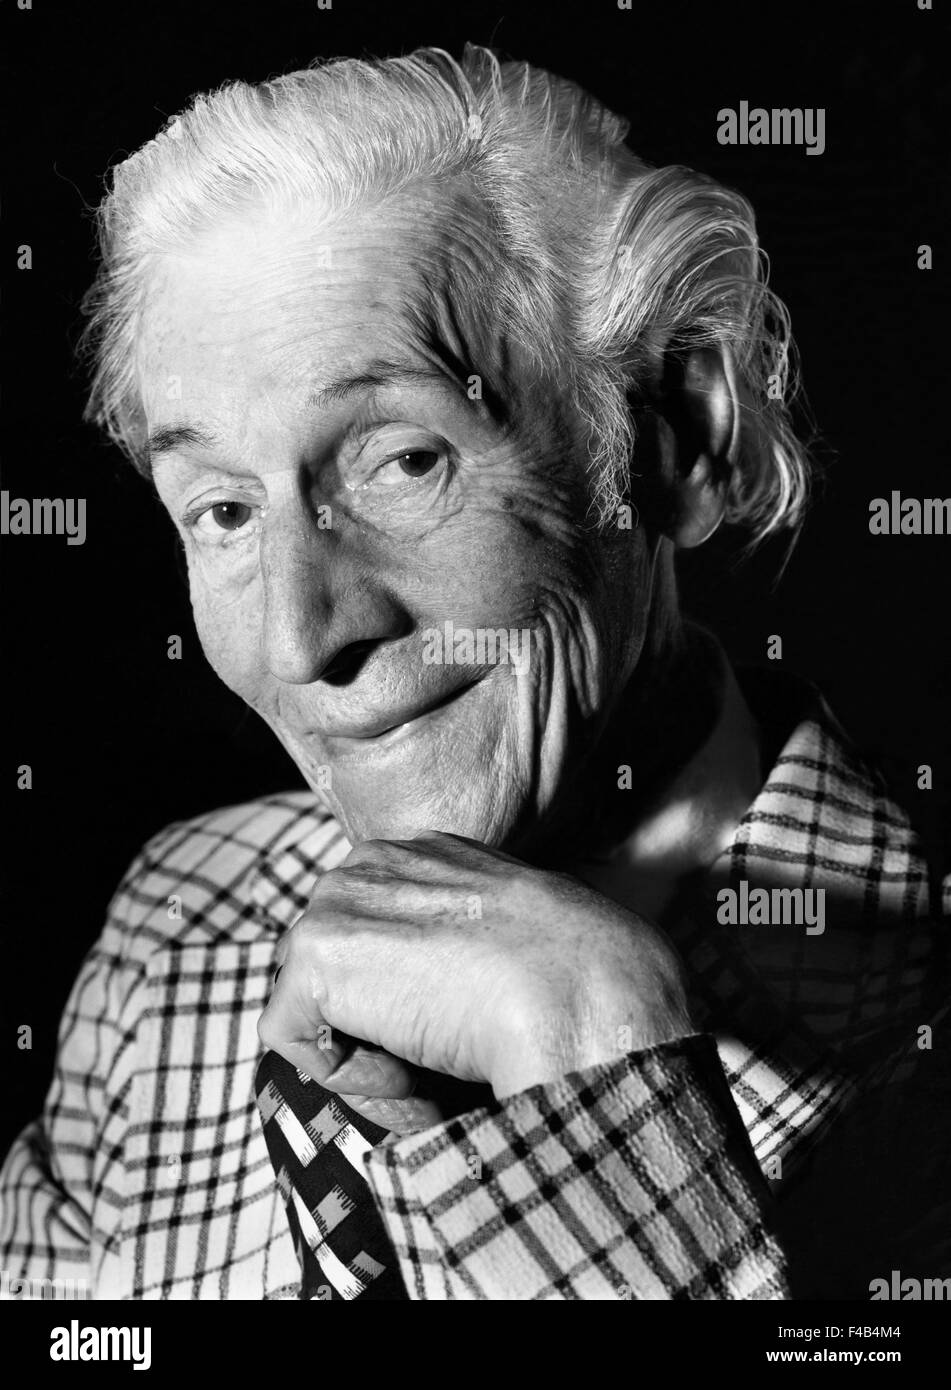 70-74 anni 75-79 anni adulti solo in bianco e nero uomo anziano espressione in luoghi chiusi l uomo vecchio una sola persona ritratto senior Foto Stock